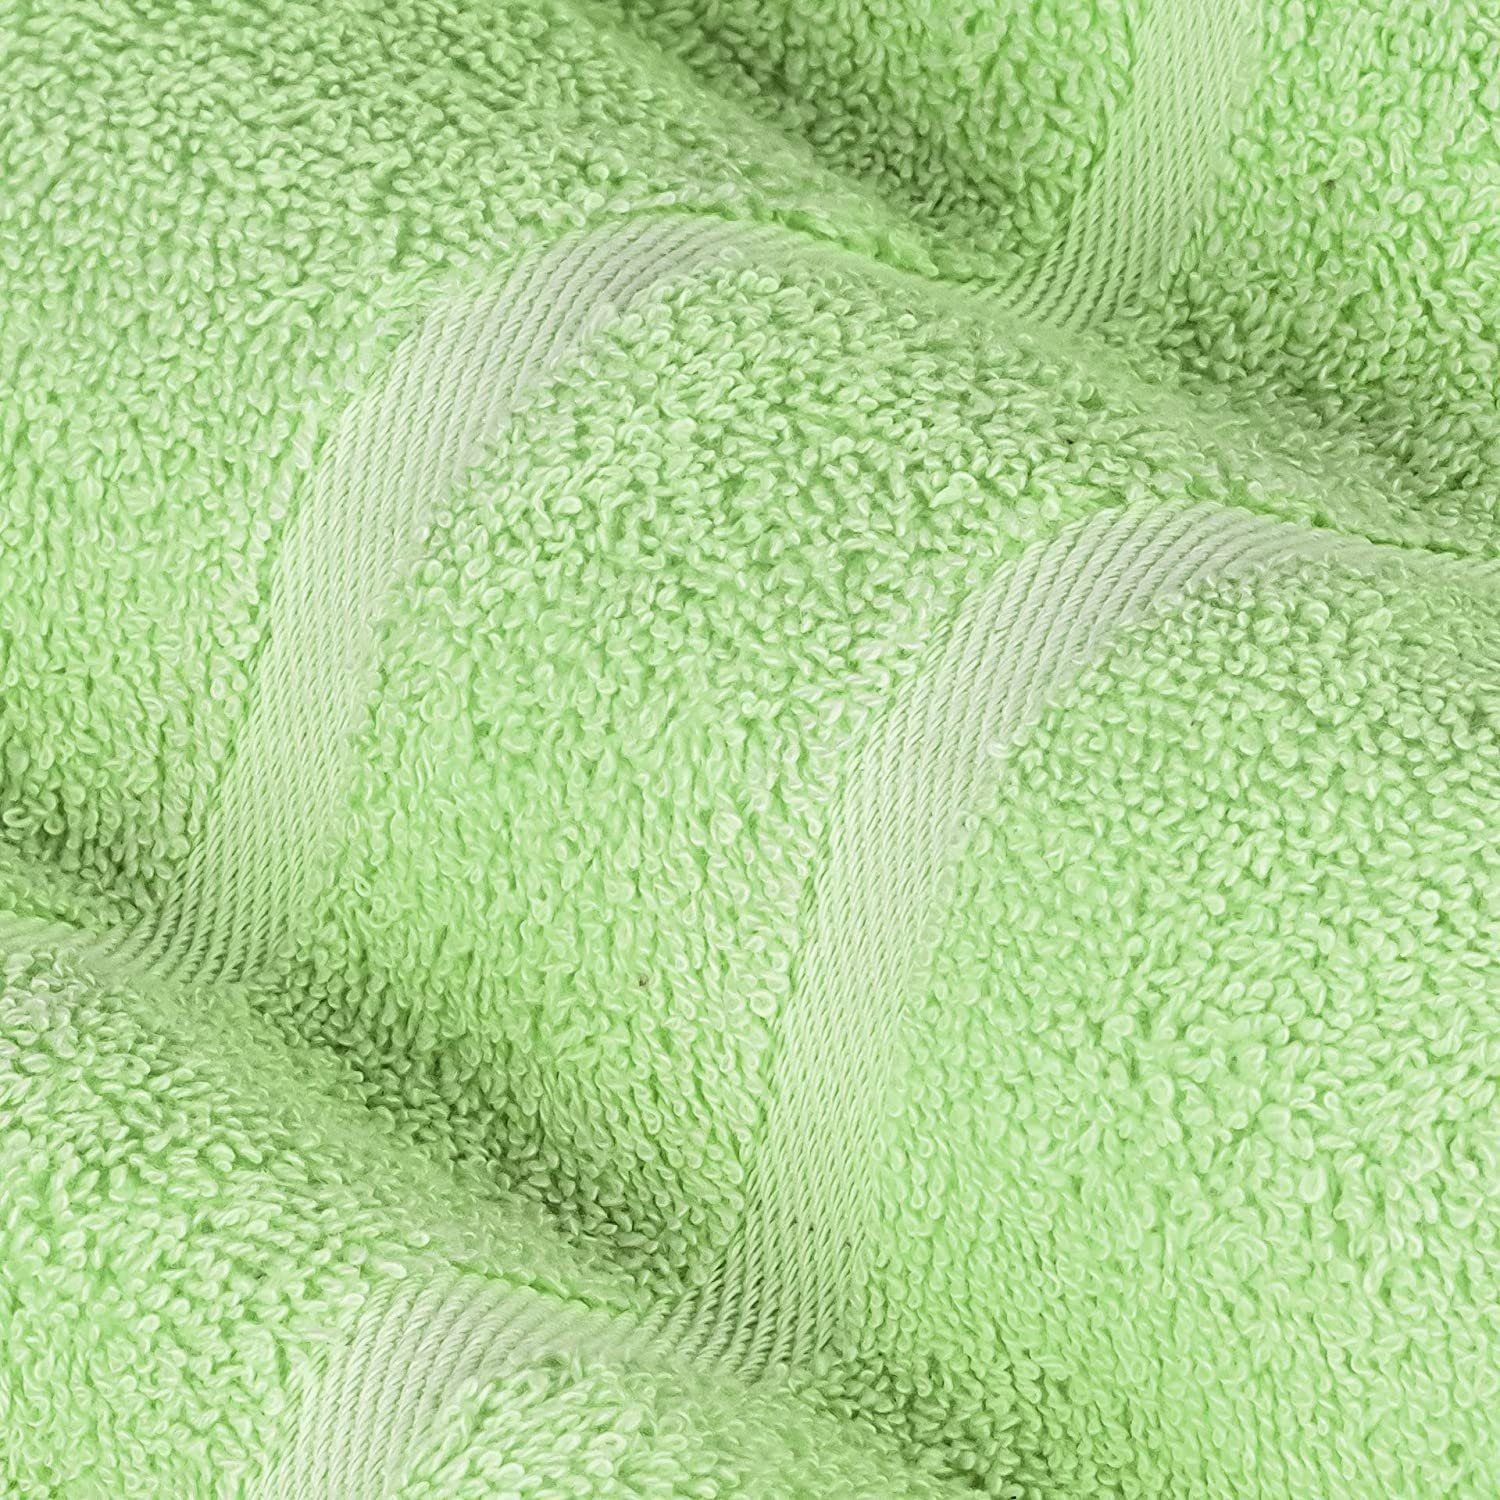 500 2x (6 500GSM Handtücher GSM Hellgrün SET Baumwolle 100% 100% StickandShine Farben Frottee verschiedenen als Handtuch Set Pack, Gästehandtuch Baumwolle Teilig) in Duschtücher Handtuch 2x 2x 6er